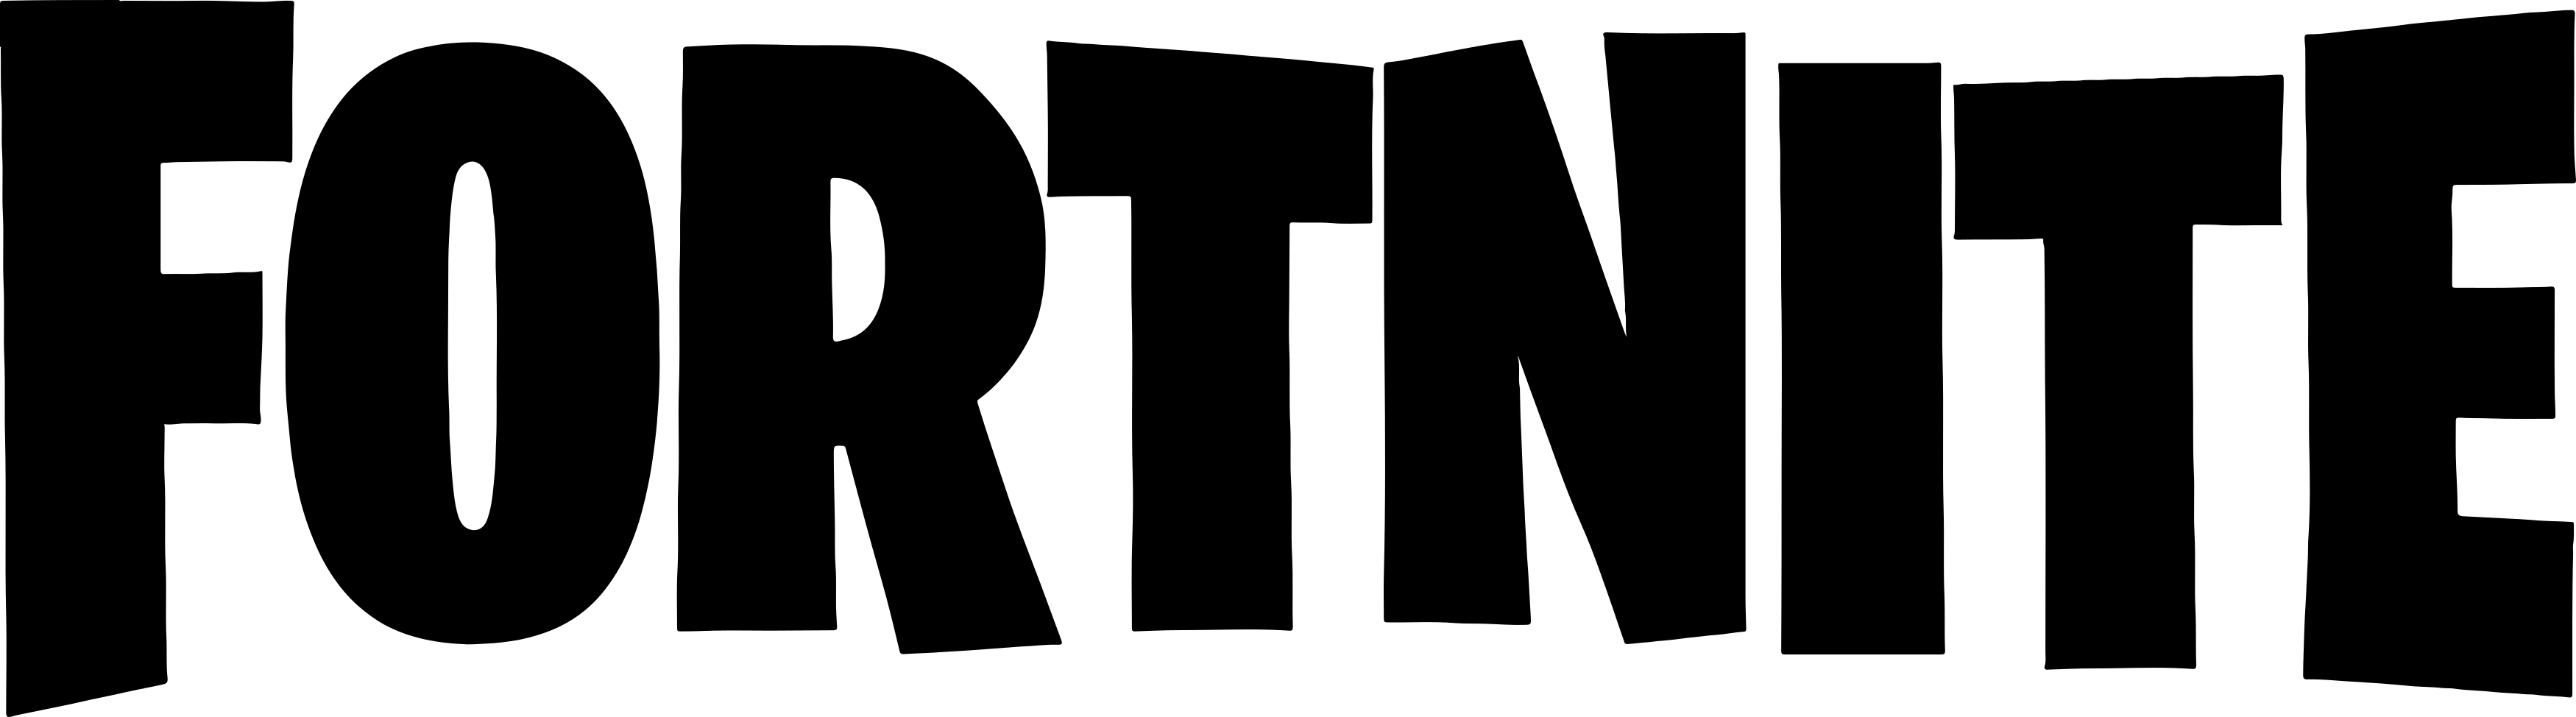 fortnite logo - Fortnite Logo